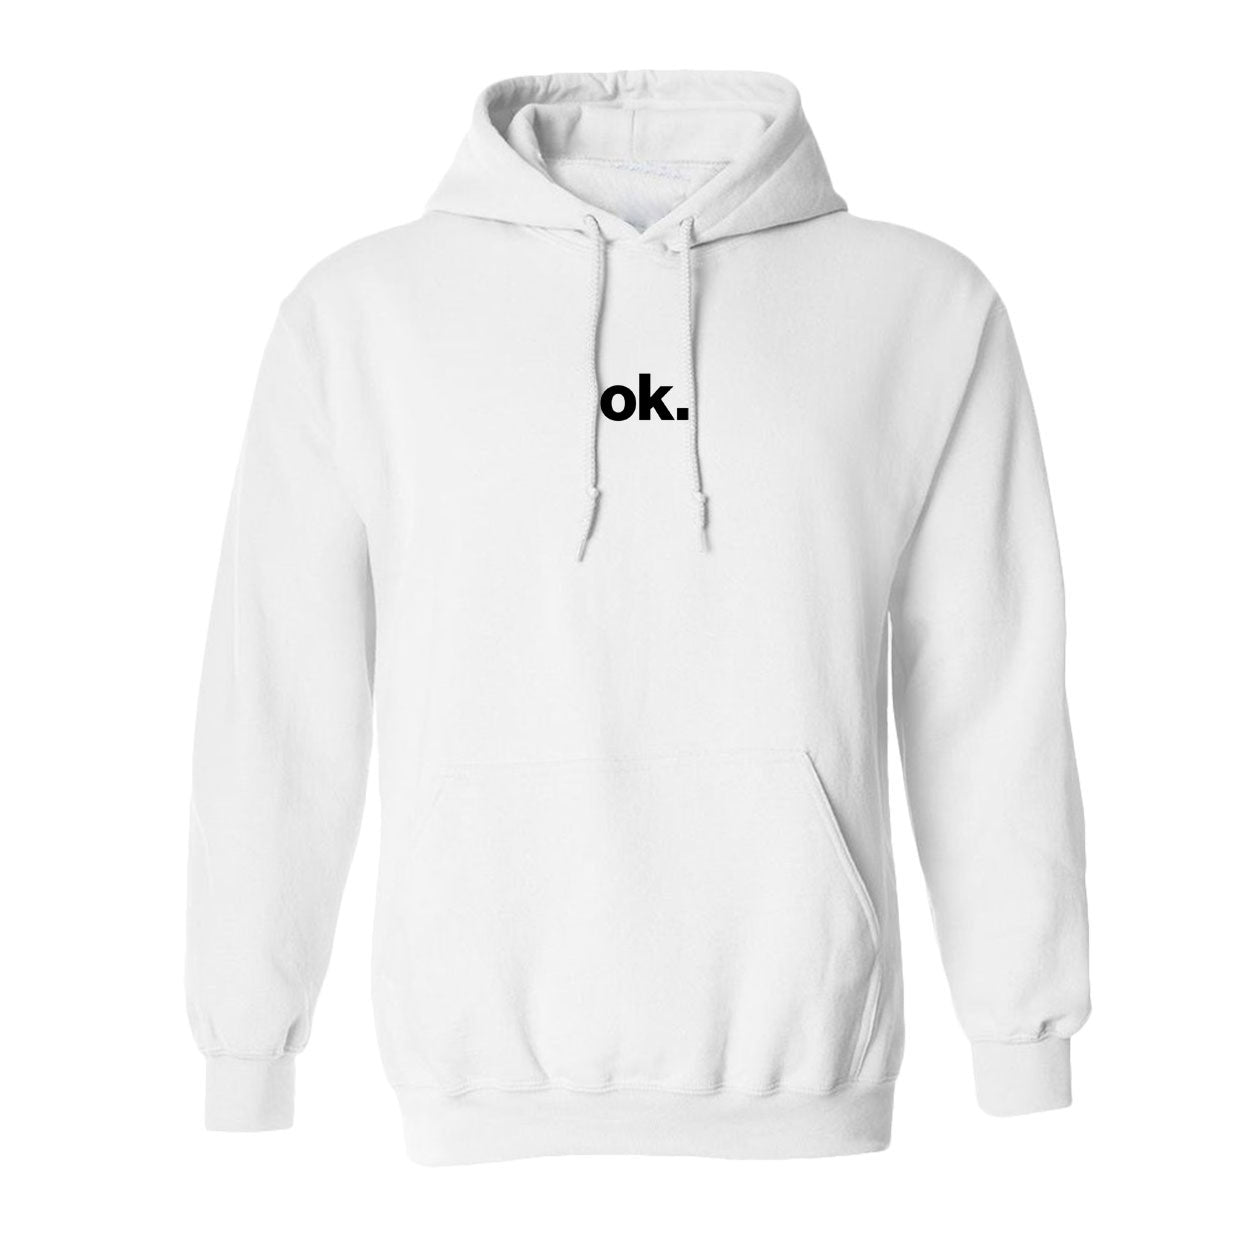 Coolmark - Ok Hoodie